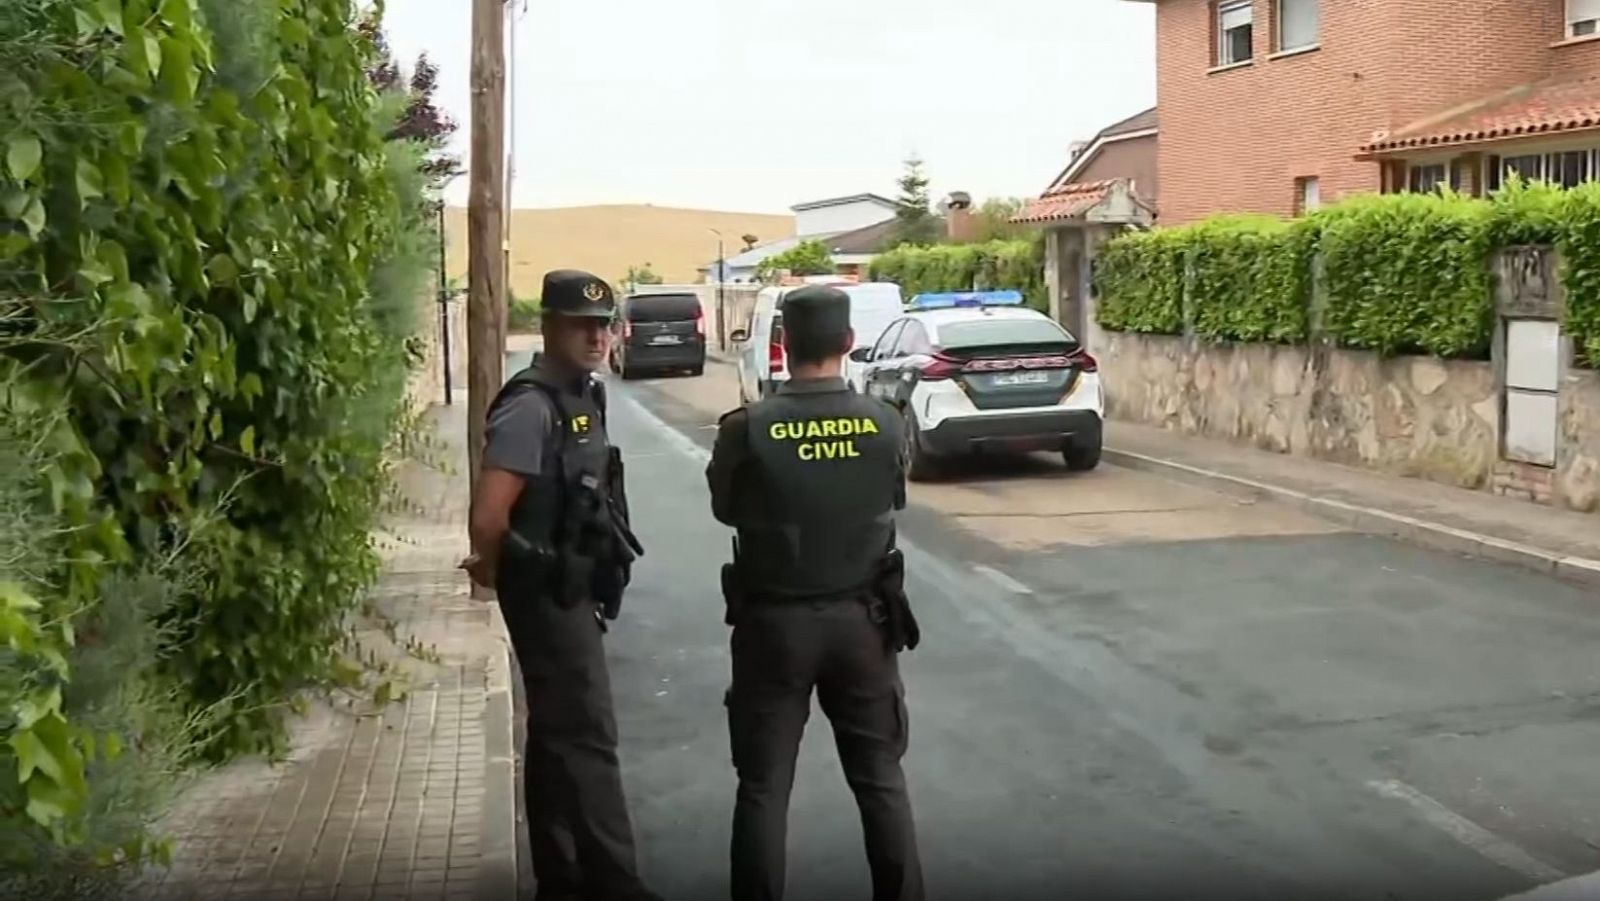 La pareja hallada muerta en Soto del Real, "probable" primer caso de violencia de género en Madrid este año